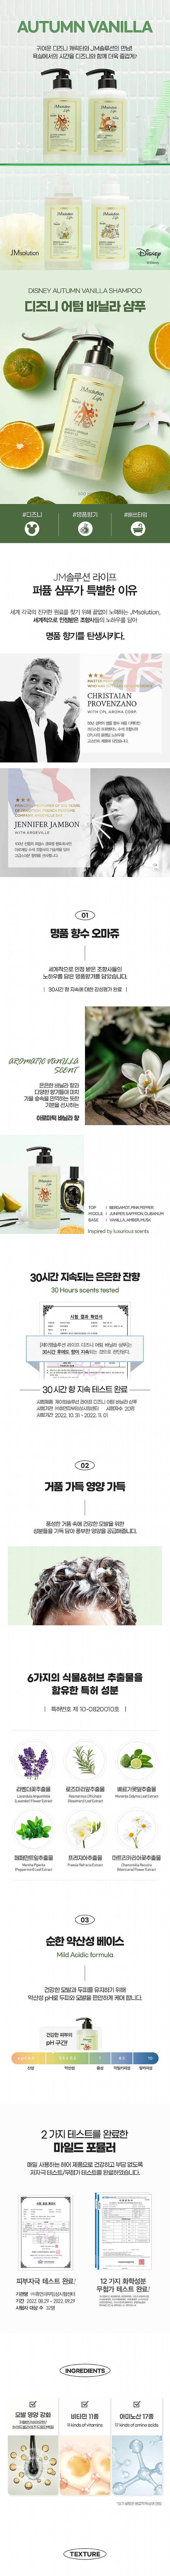 沐浴乳 身體清潔 護髮素 頭髮清潔 韓國 jmsolution